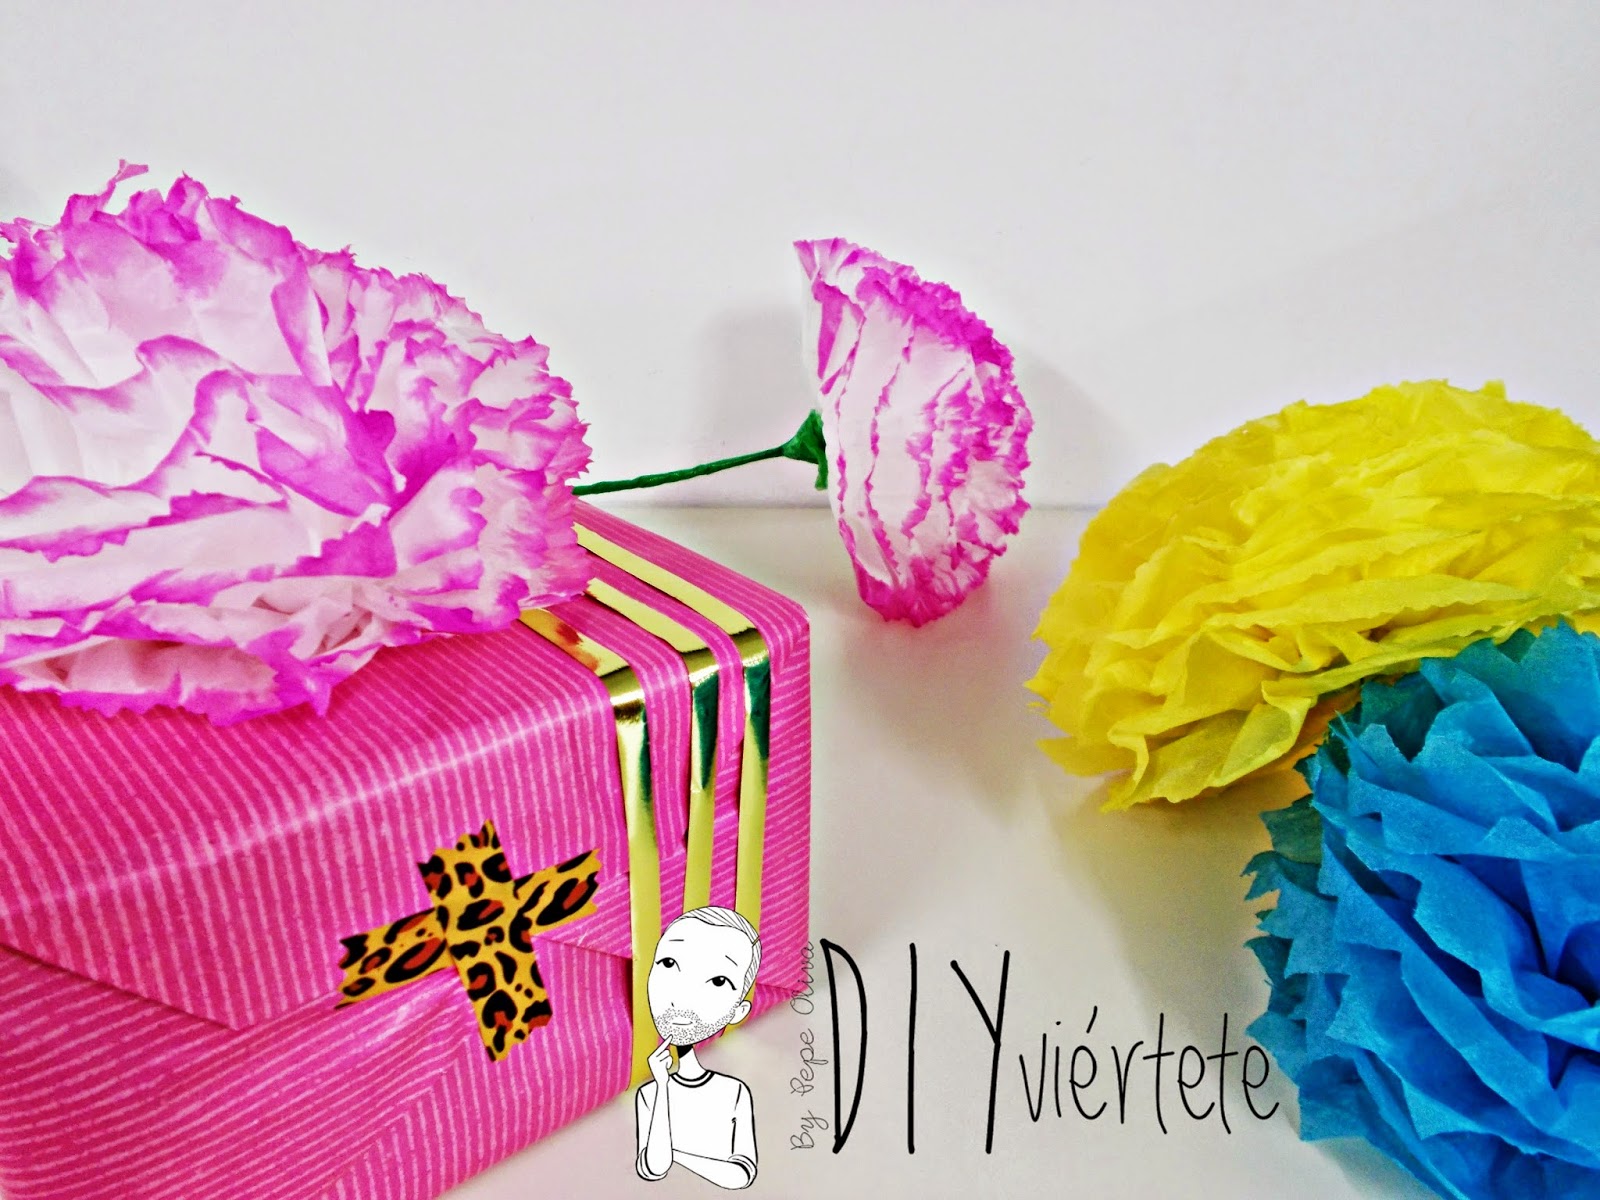 DIY-manualidades-ideas-decoración-pompón-papel de seda-cumpleaños-fiestas-regalos-flores-collage